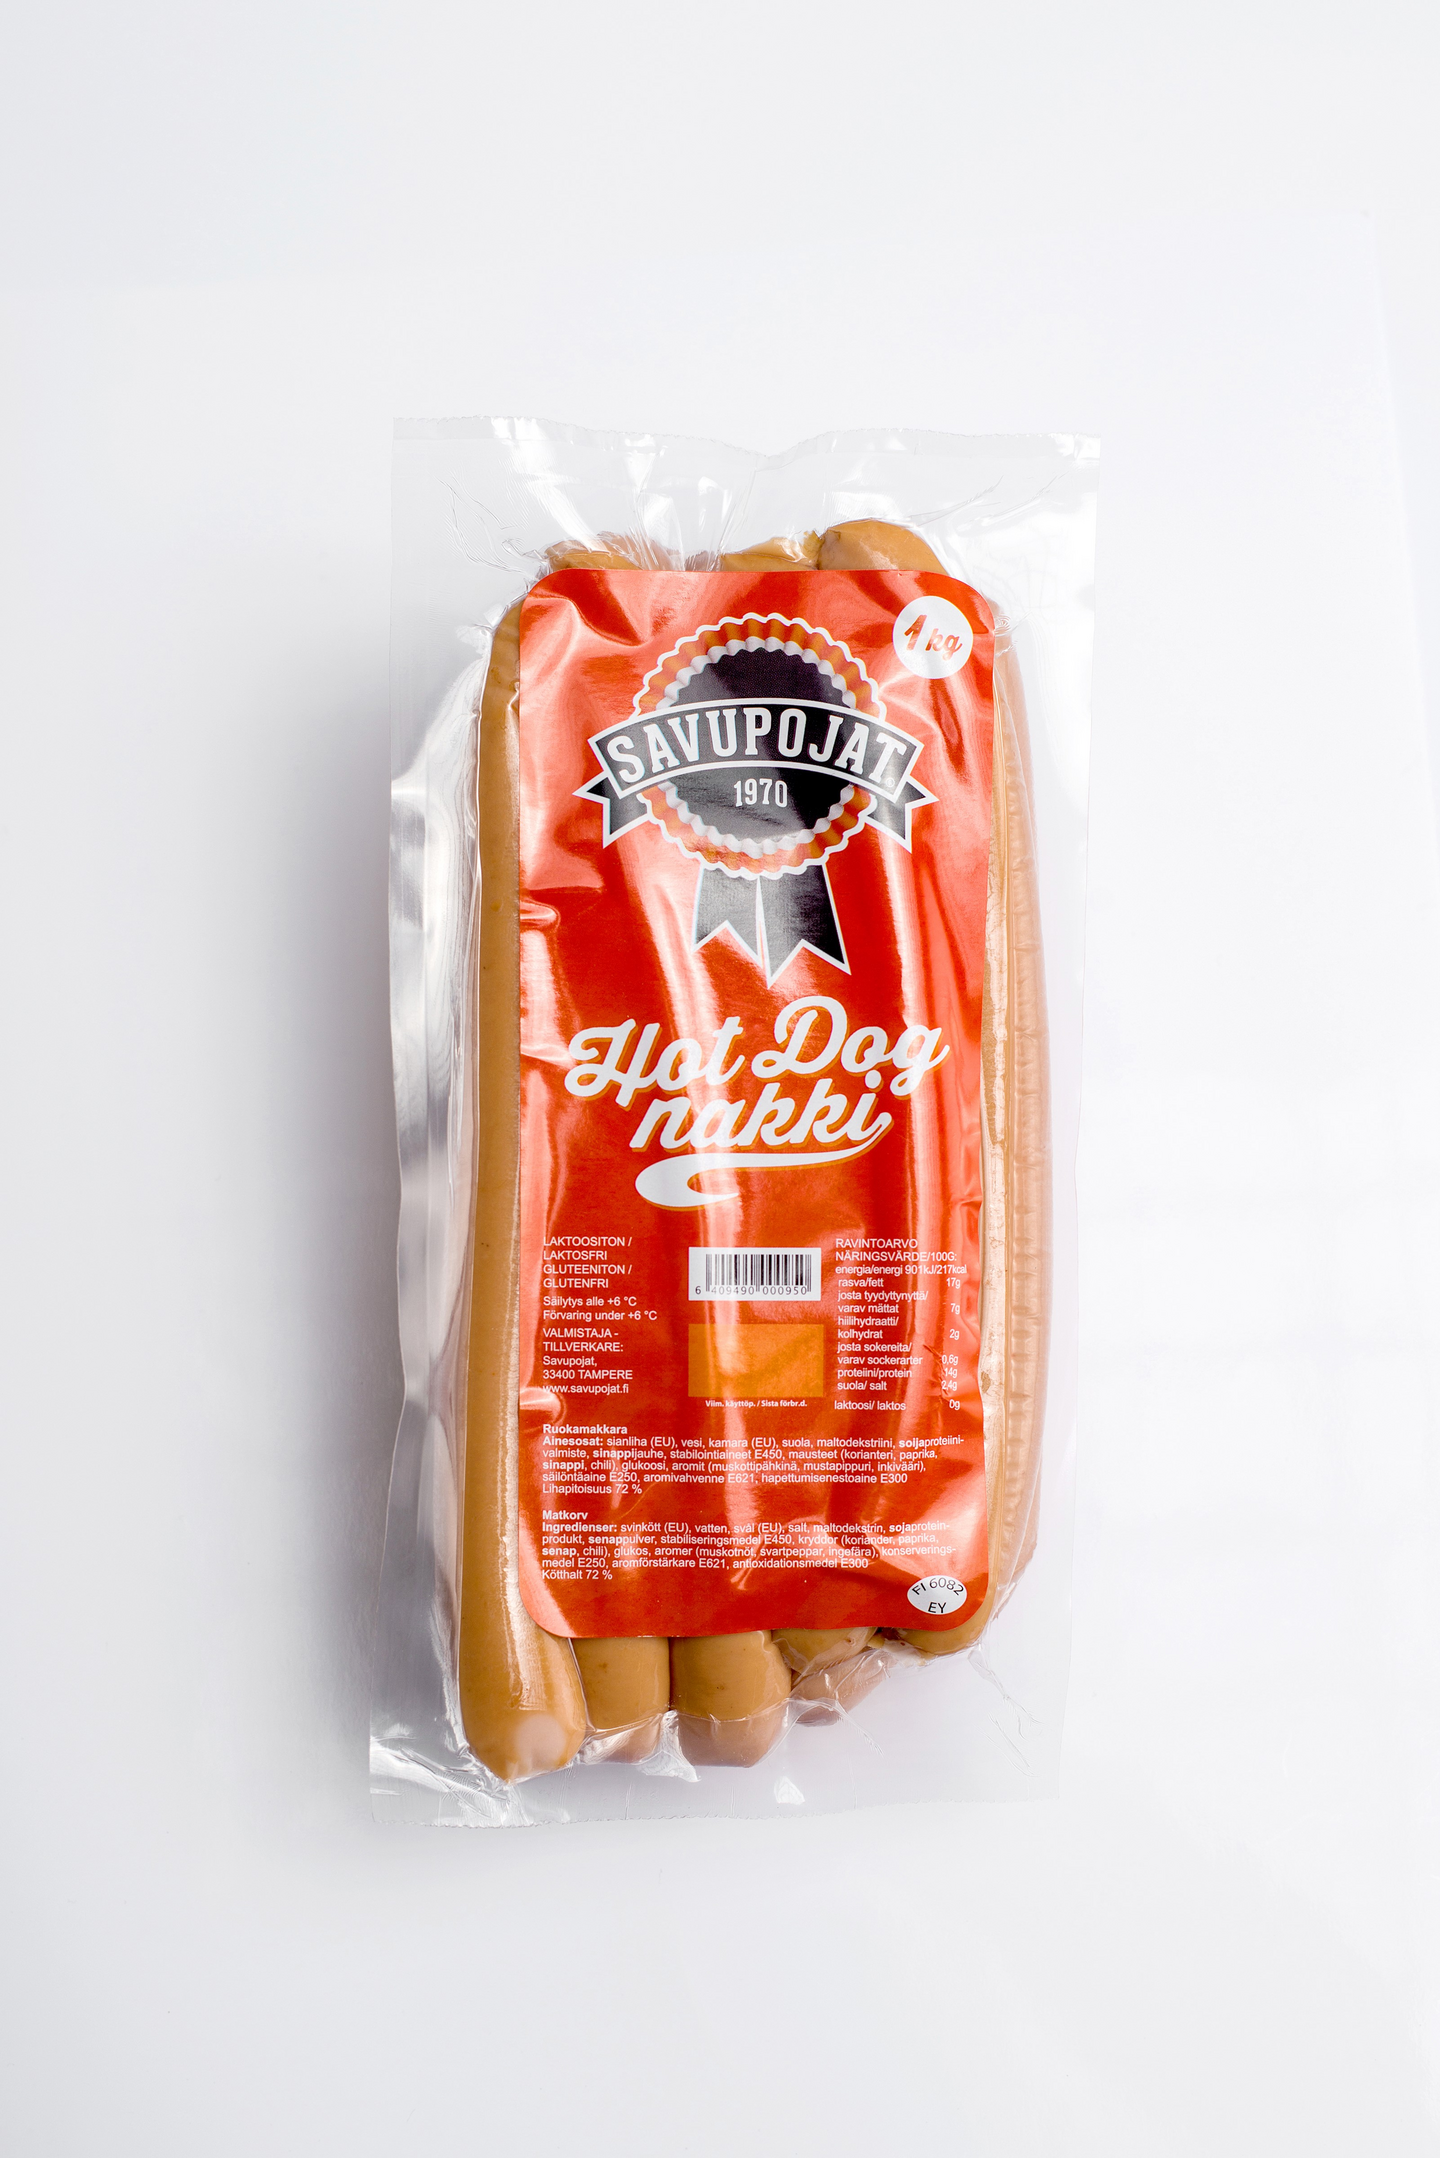 Tapolan Savupojat hot dog nakki 1kg